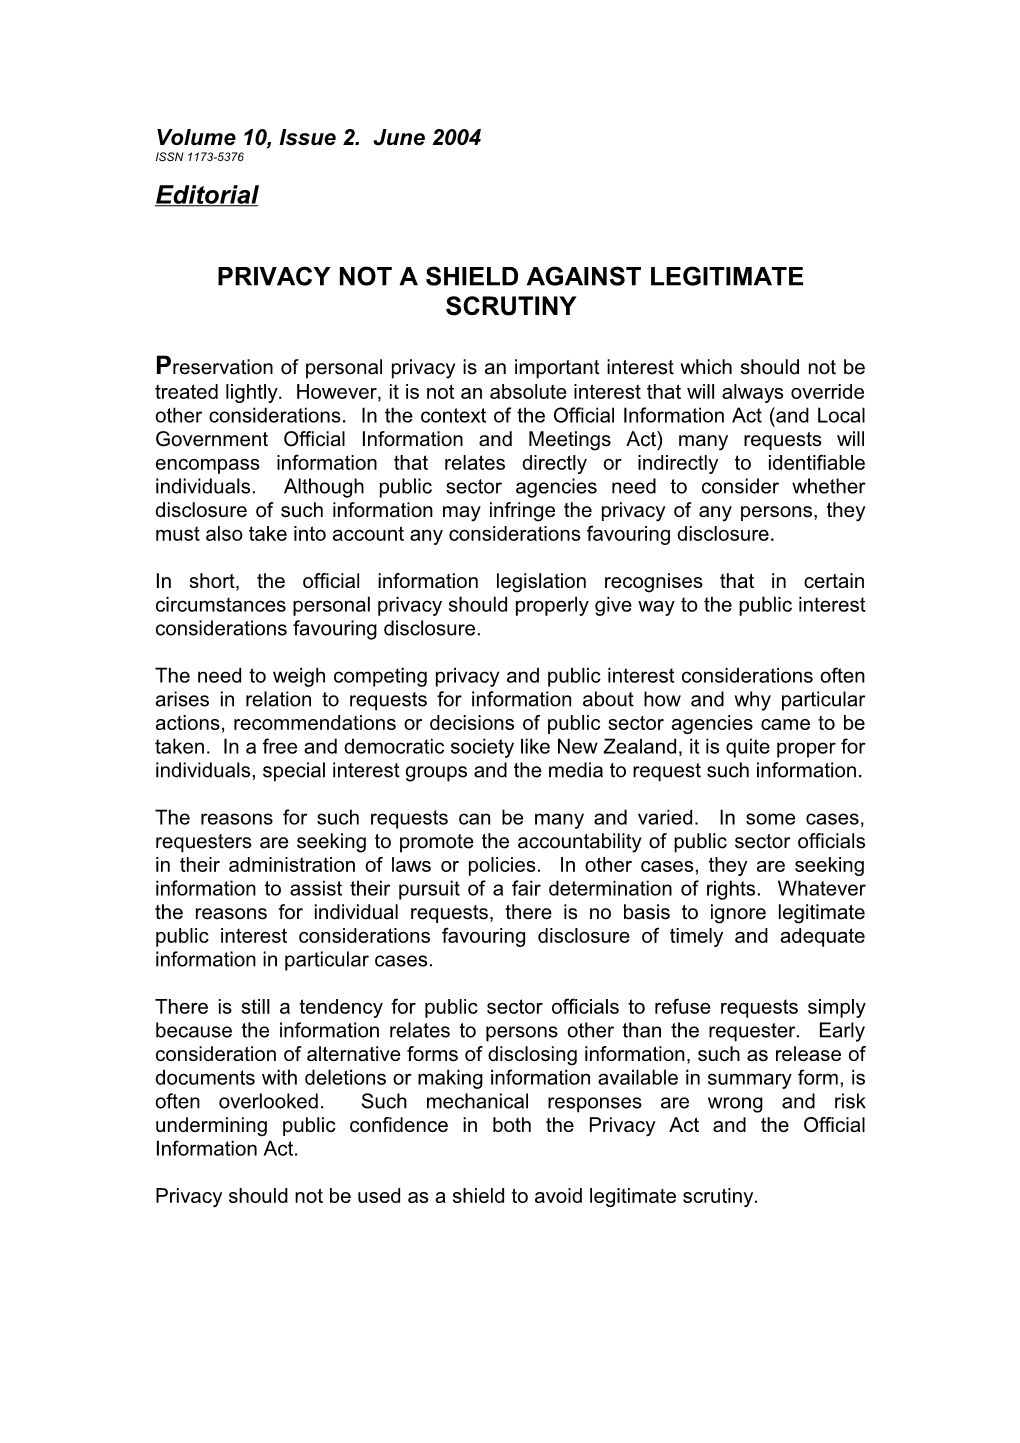 Privacy Not a Shield Against Legitimate Scrutiny